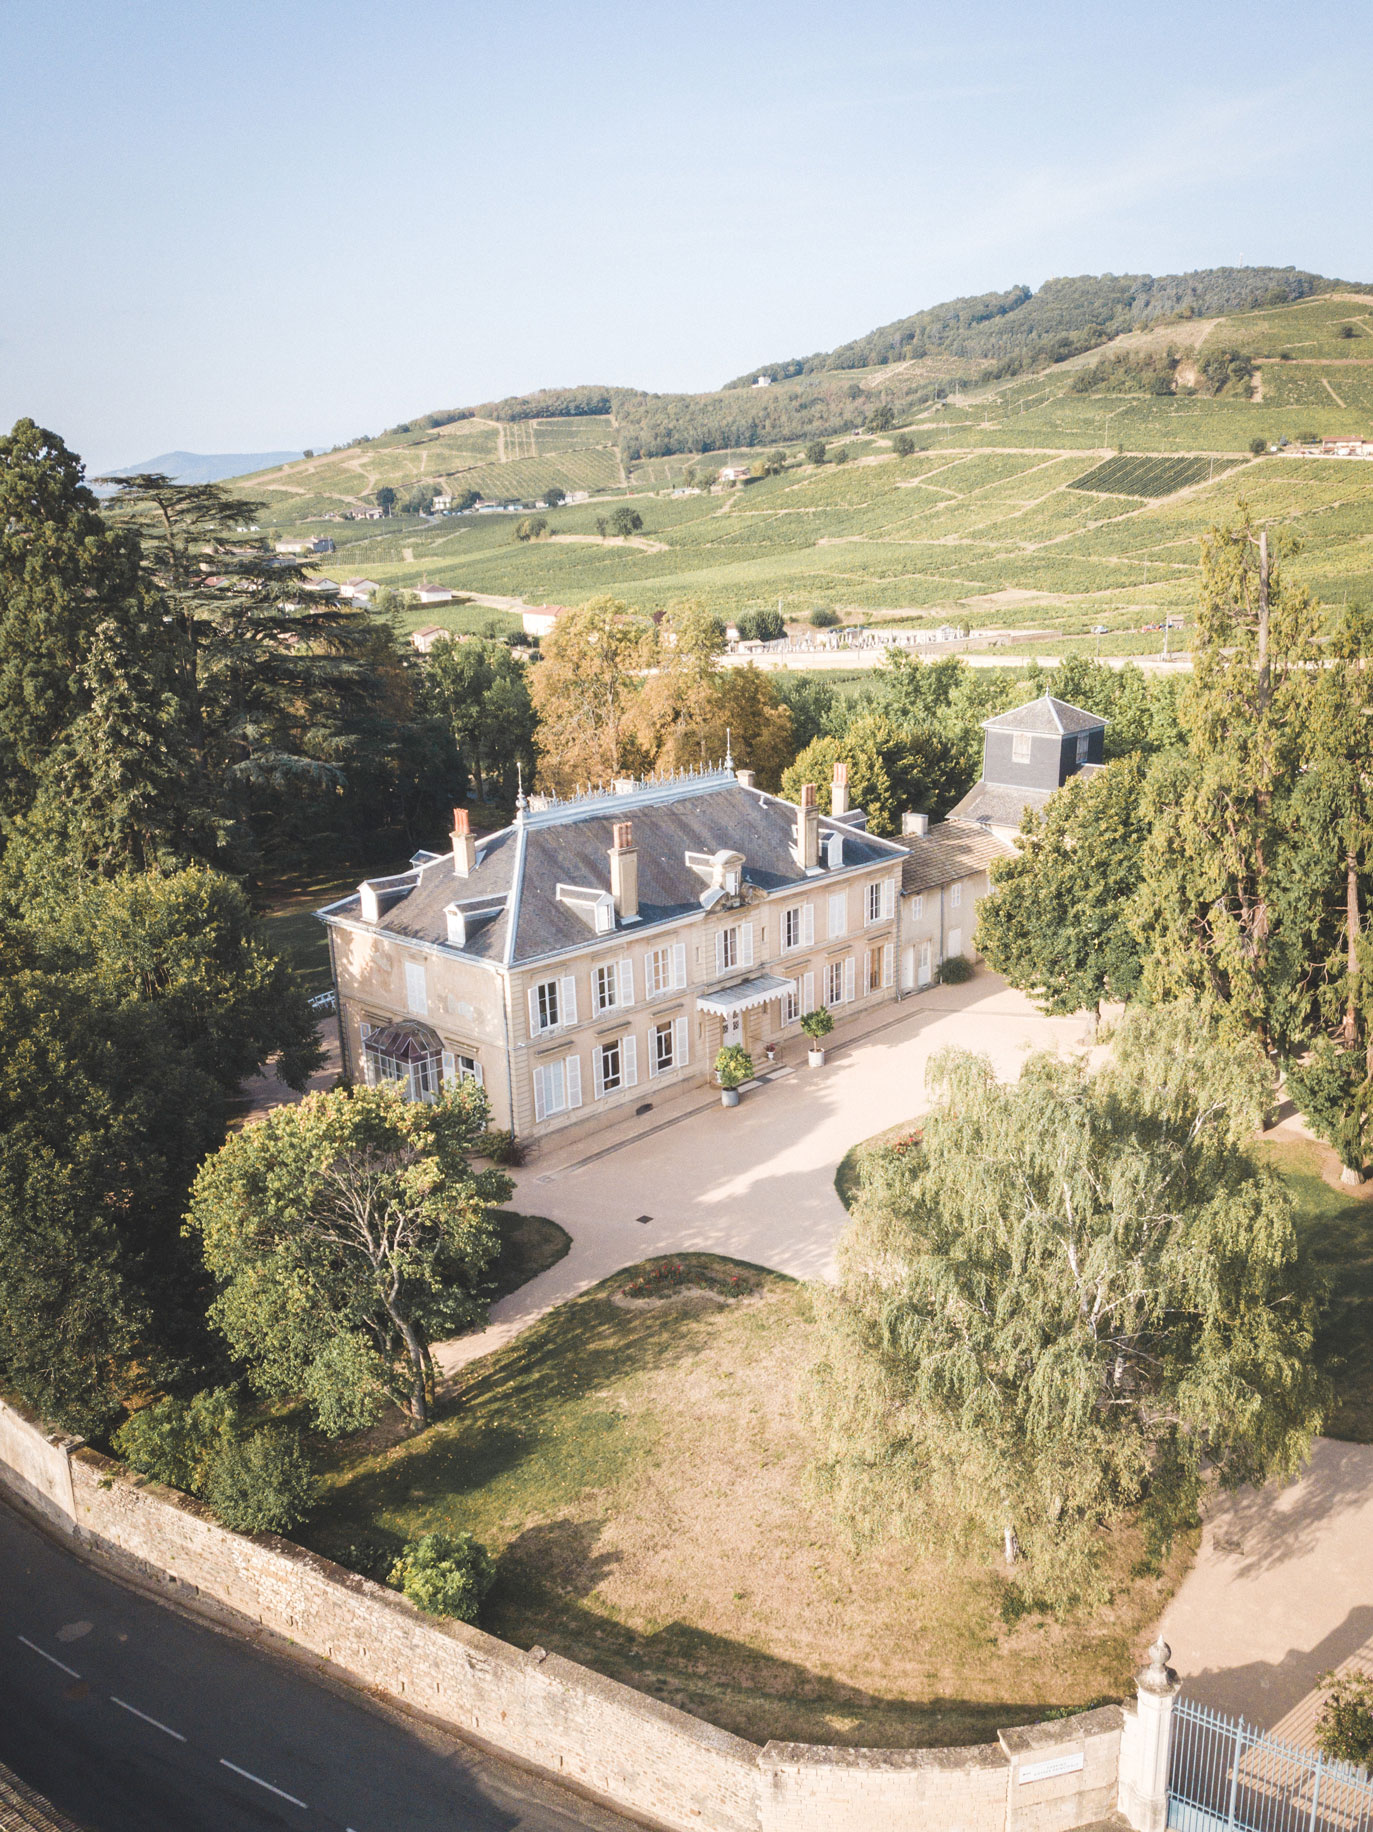 Vue aérienne du château des Ravatys - Crédit photo : Château des Ravatys